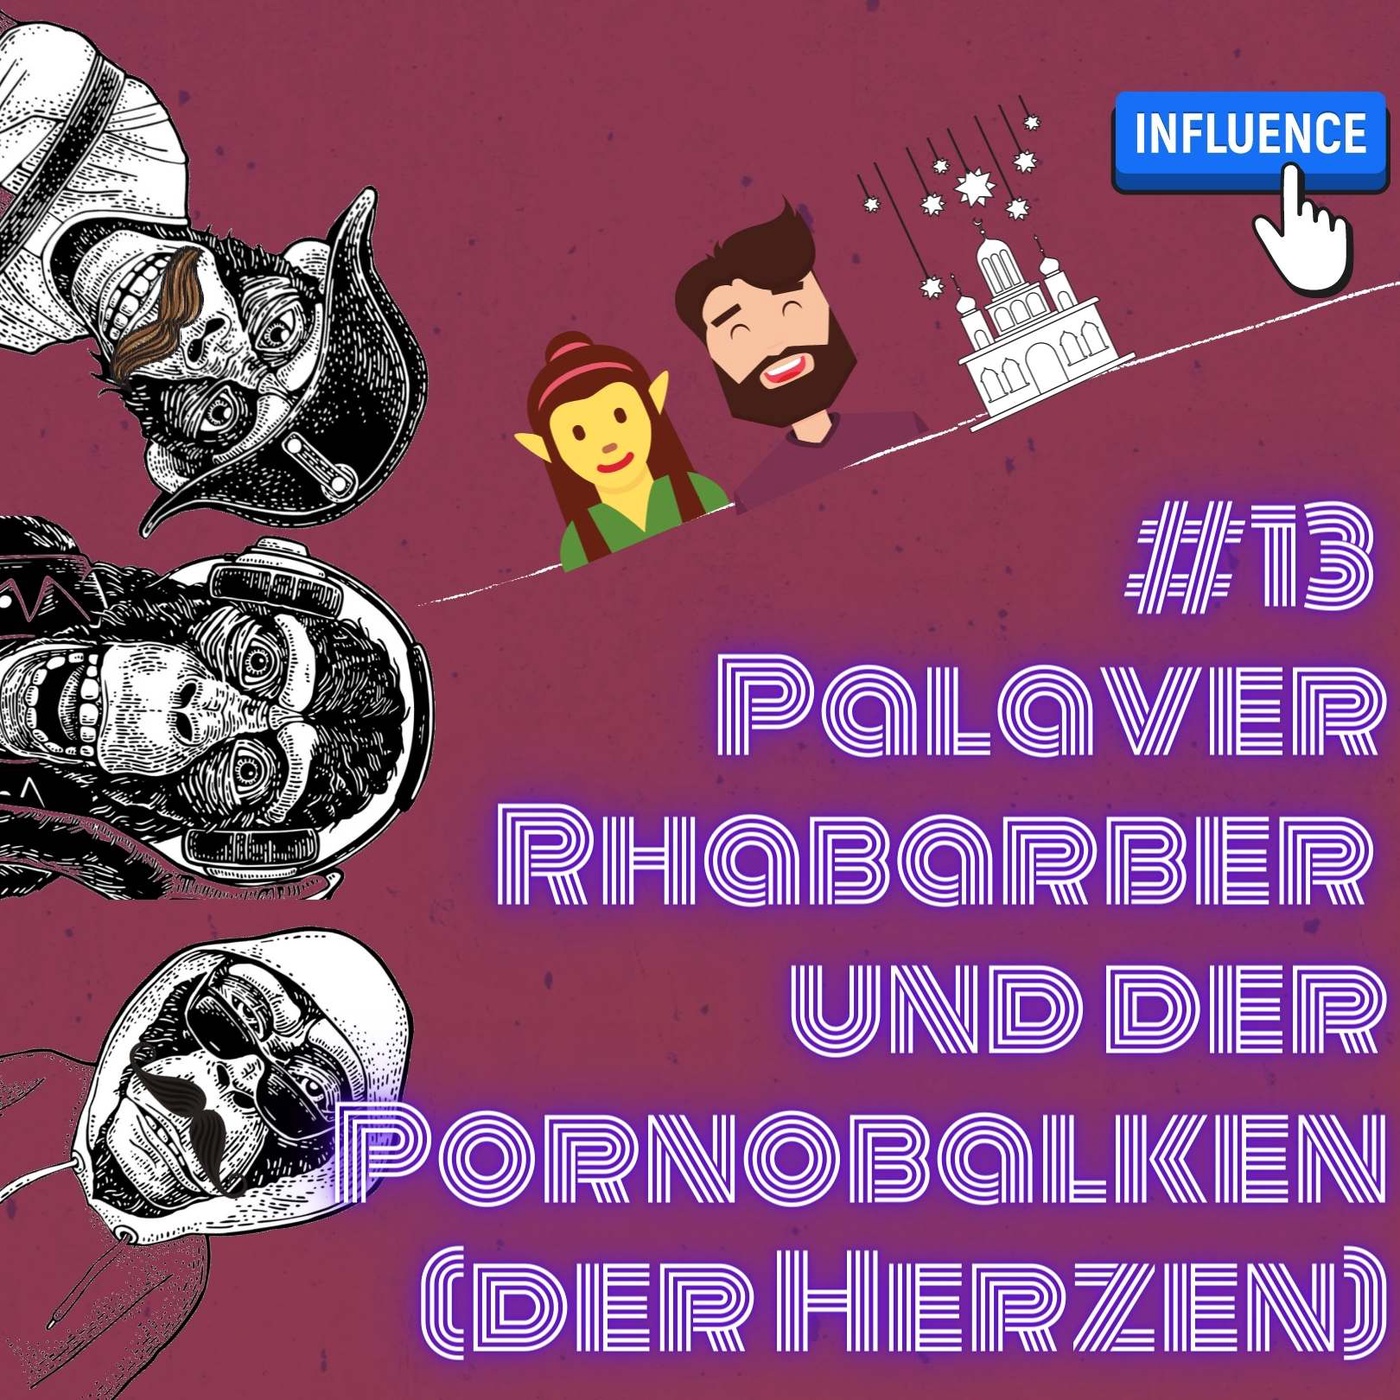 #13 Palaver Rhabarber und der Pornobalken (der Herzen)